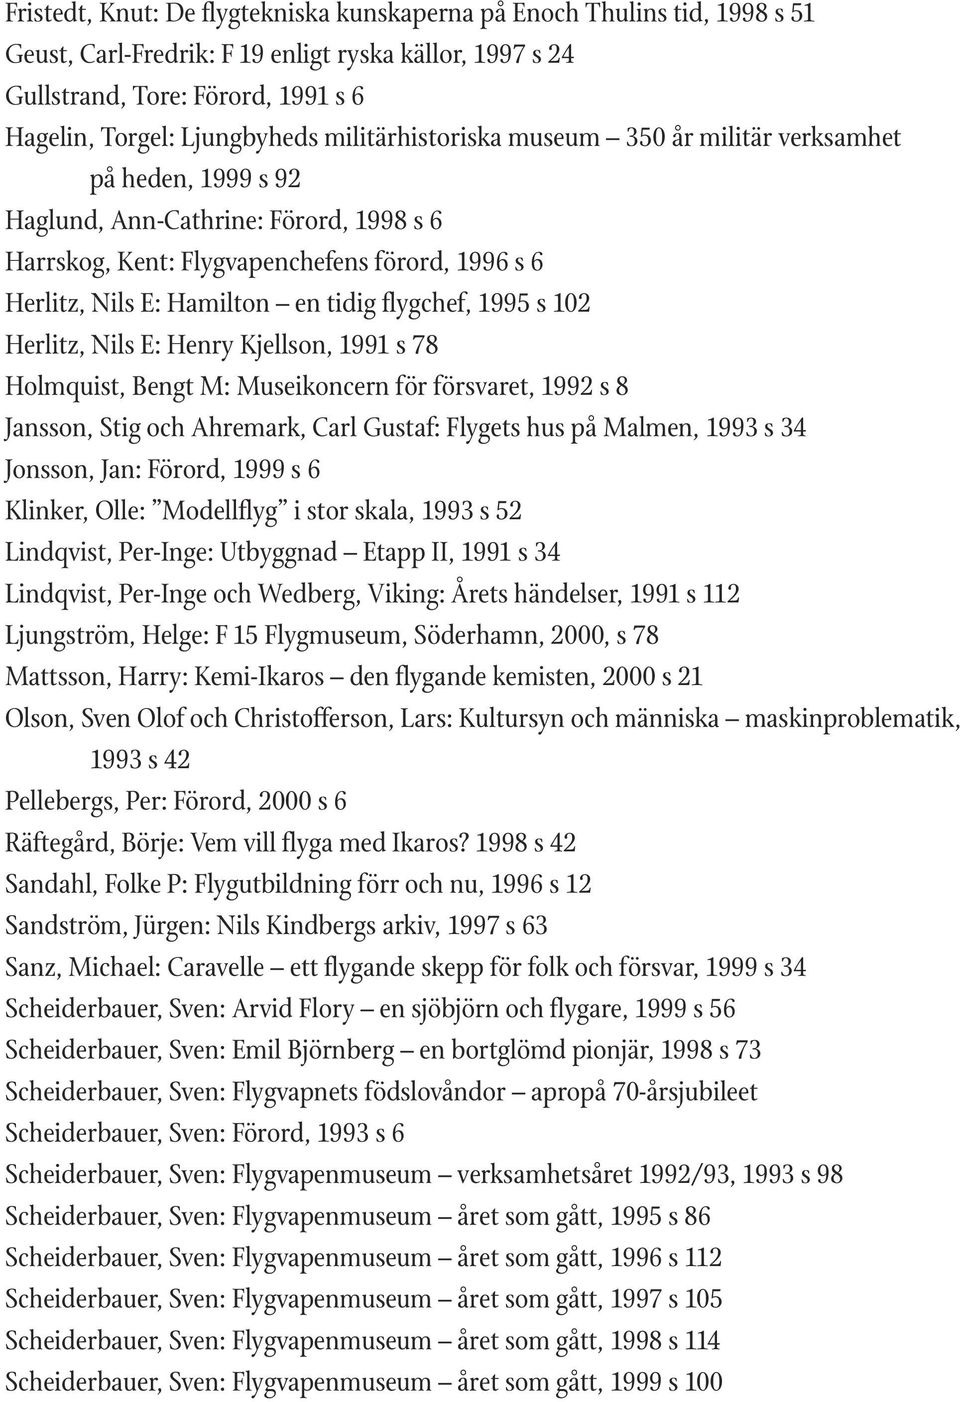 flygchef, 1995 s 102 Herlitz, Nils E: Henry Kjellson, 1991 s 78 Holmquist, Bengt M: Museikoncern för försvaret, 1992 s 8 Jansson, Stig och Ahremark, Carl Gustaf: Flygets hus på Malmen, 1993 s 34